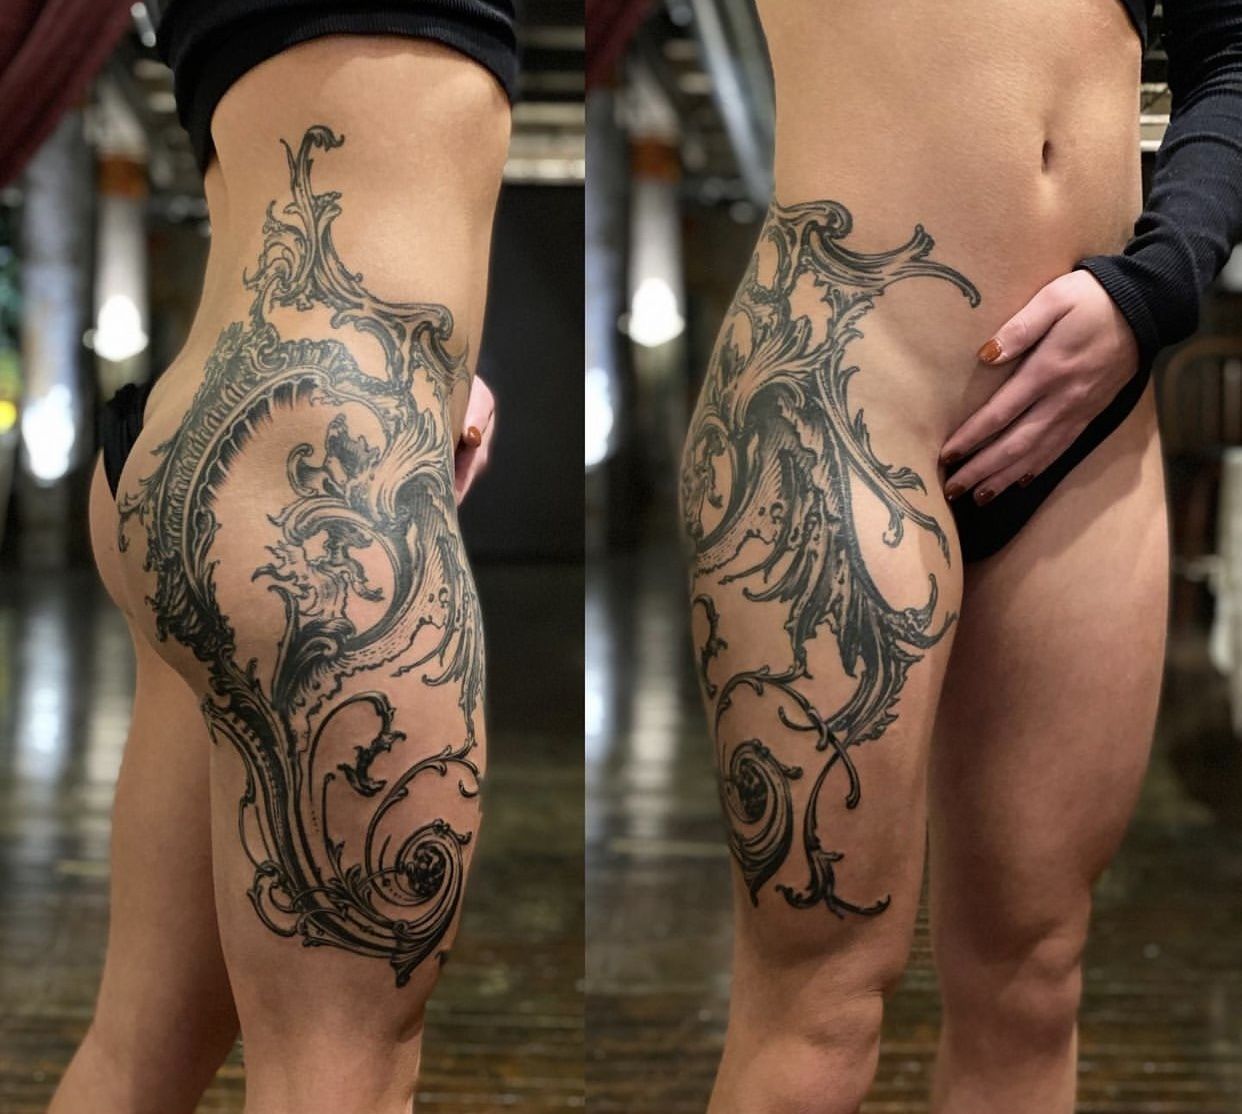 Hip  Thigh Tattoos Spicy  but worth itttt  tattooideas tattooart  tattooshop portlandtattooartist tattoolife portlandtattoo  Instagram